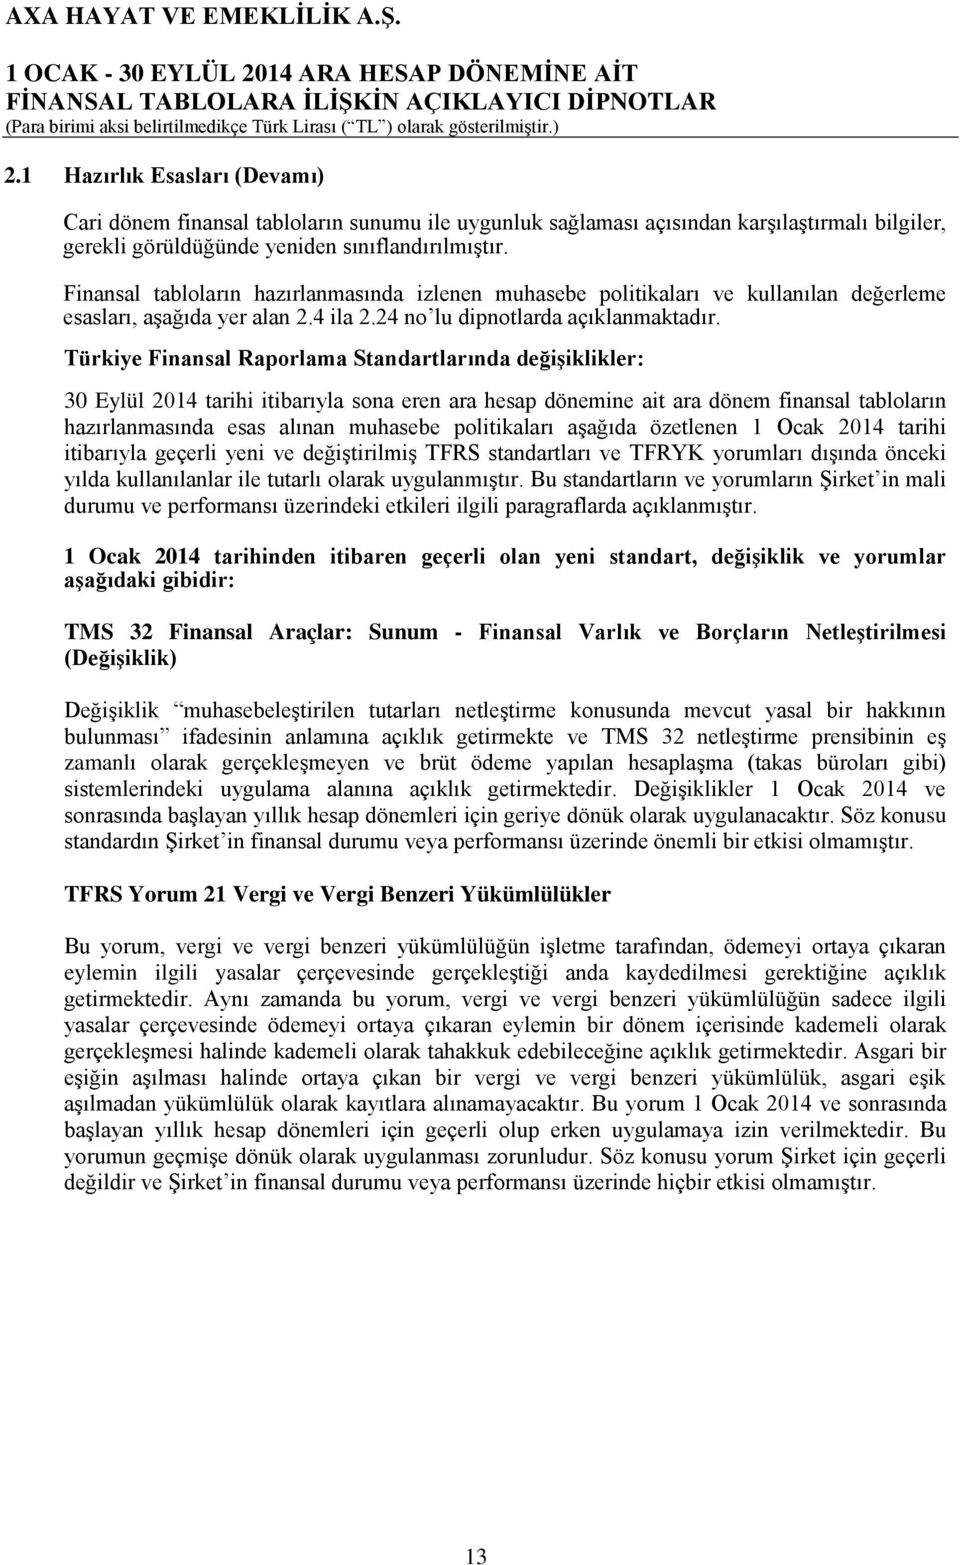 Türkiye Finansal Raporlama Standartlarında değişiklikler: 30 Eylül 2014 tarihi itibarıyla sona eren ara hesap dönemine ait ara dönem finansal tabloların hazırlanmasında esas alınan muhasebe